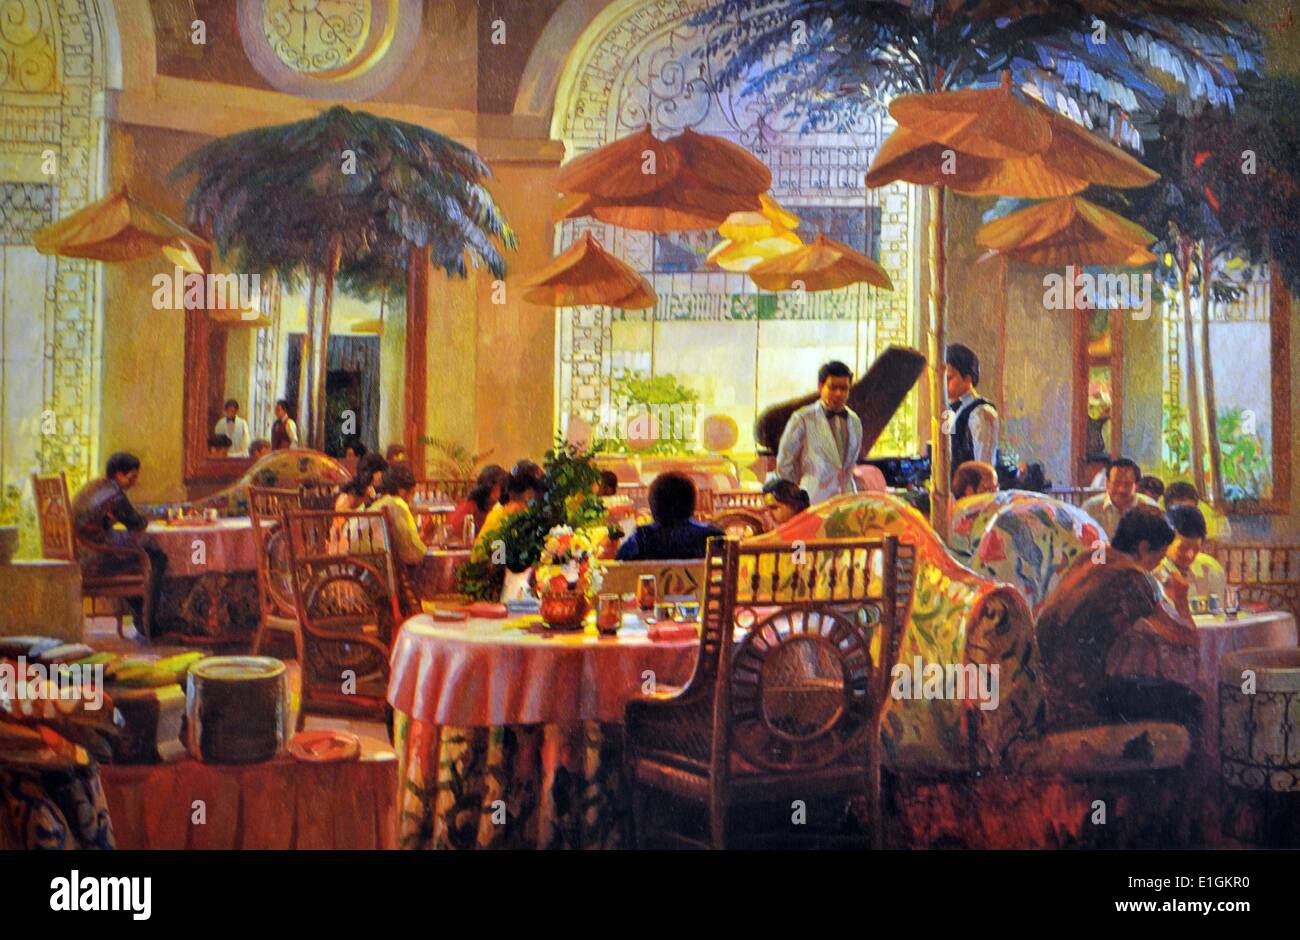 Sofronio Y. Mendoza, Champagne Room. 1980. Oil on canvas. Stock Photo